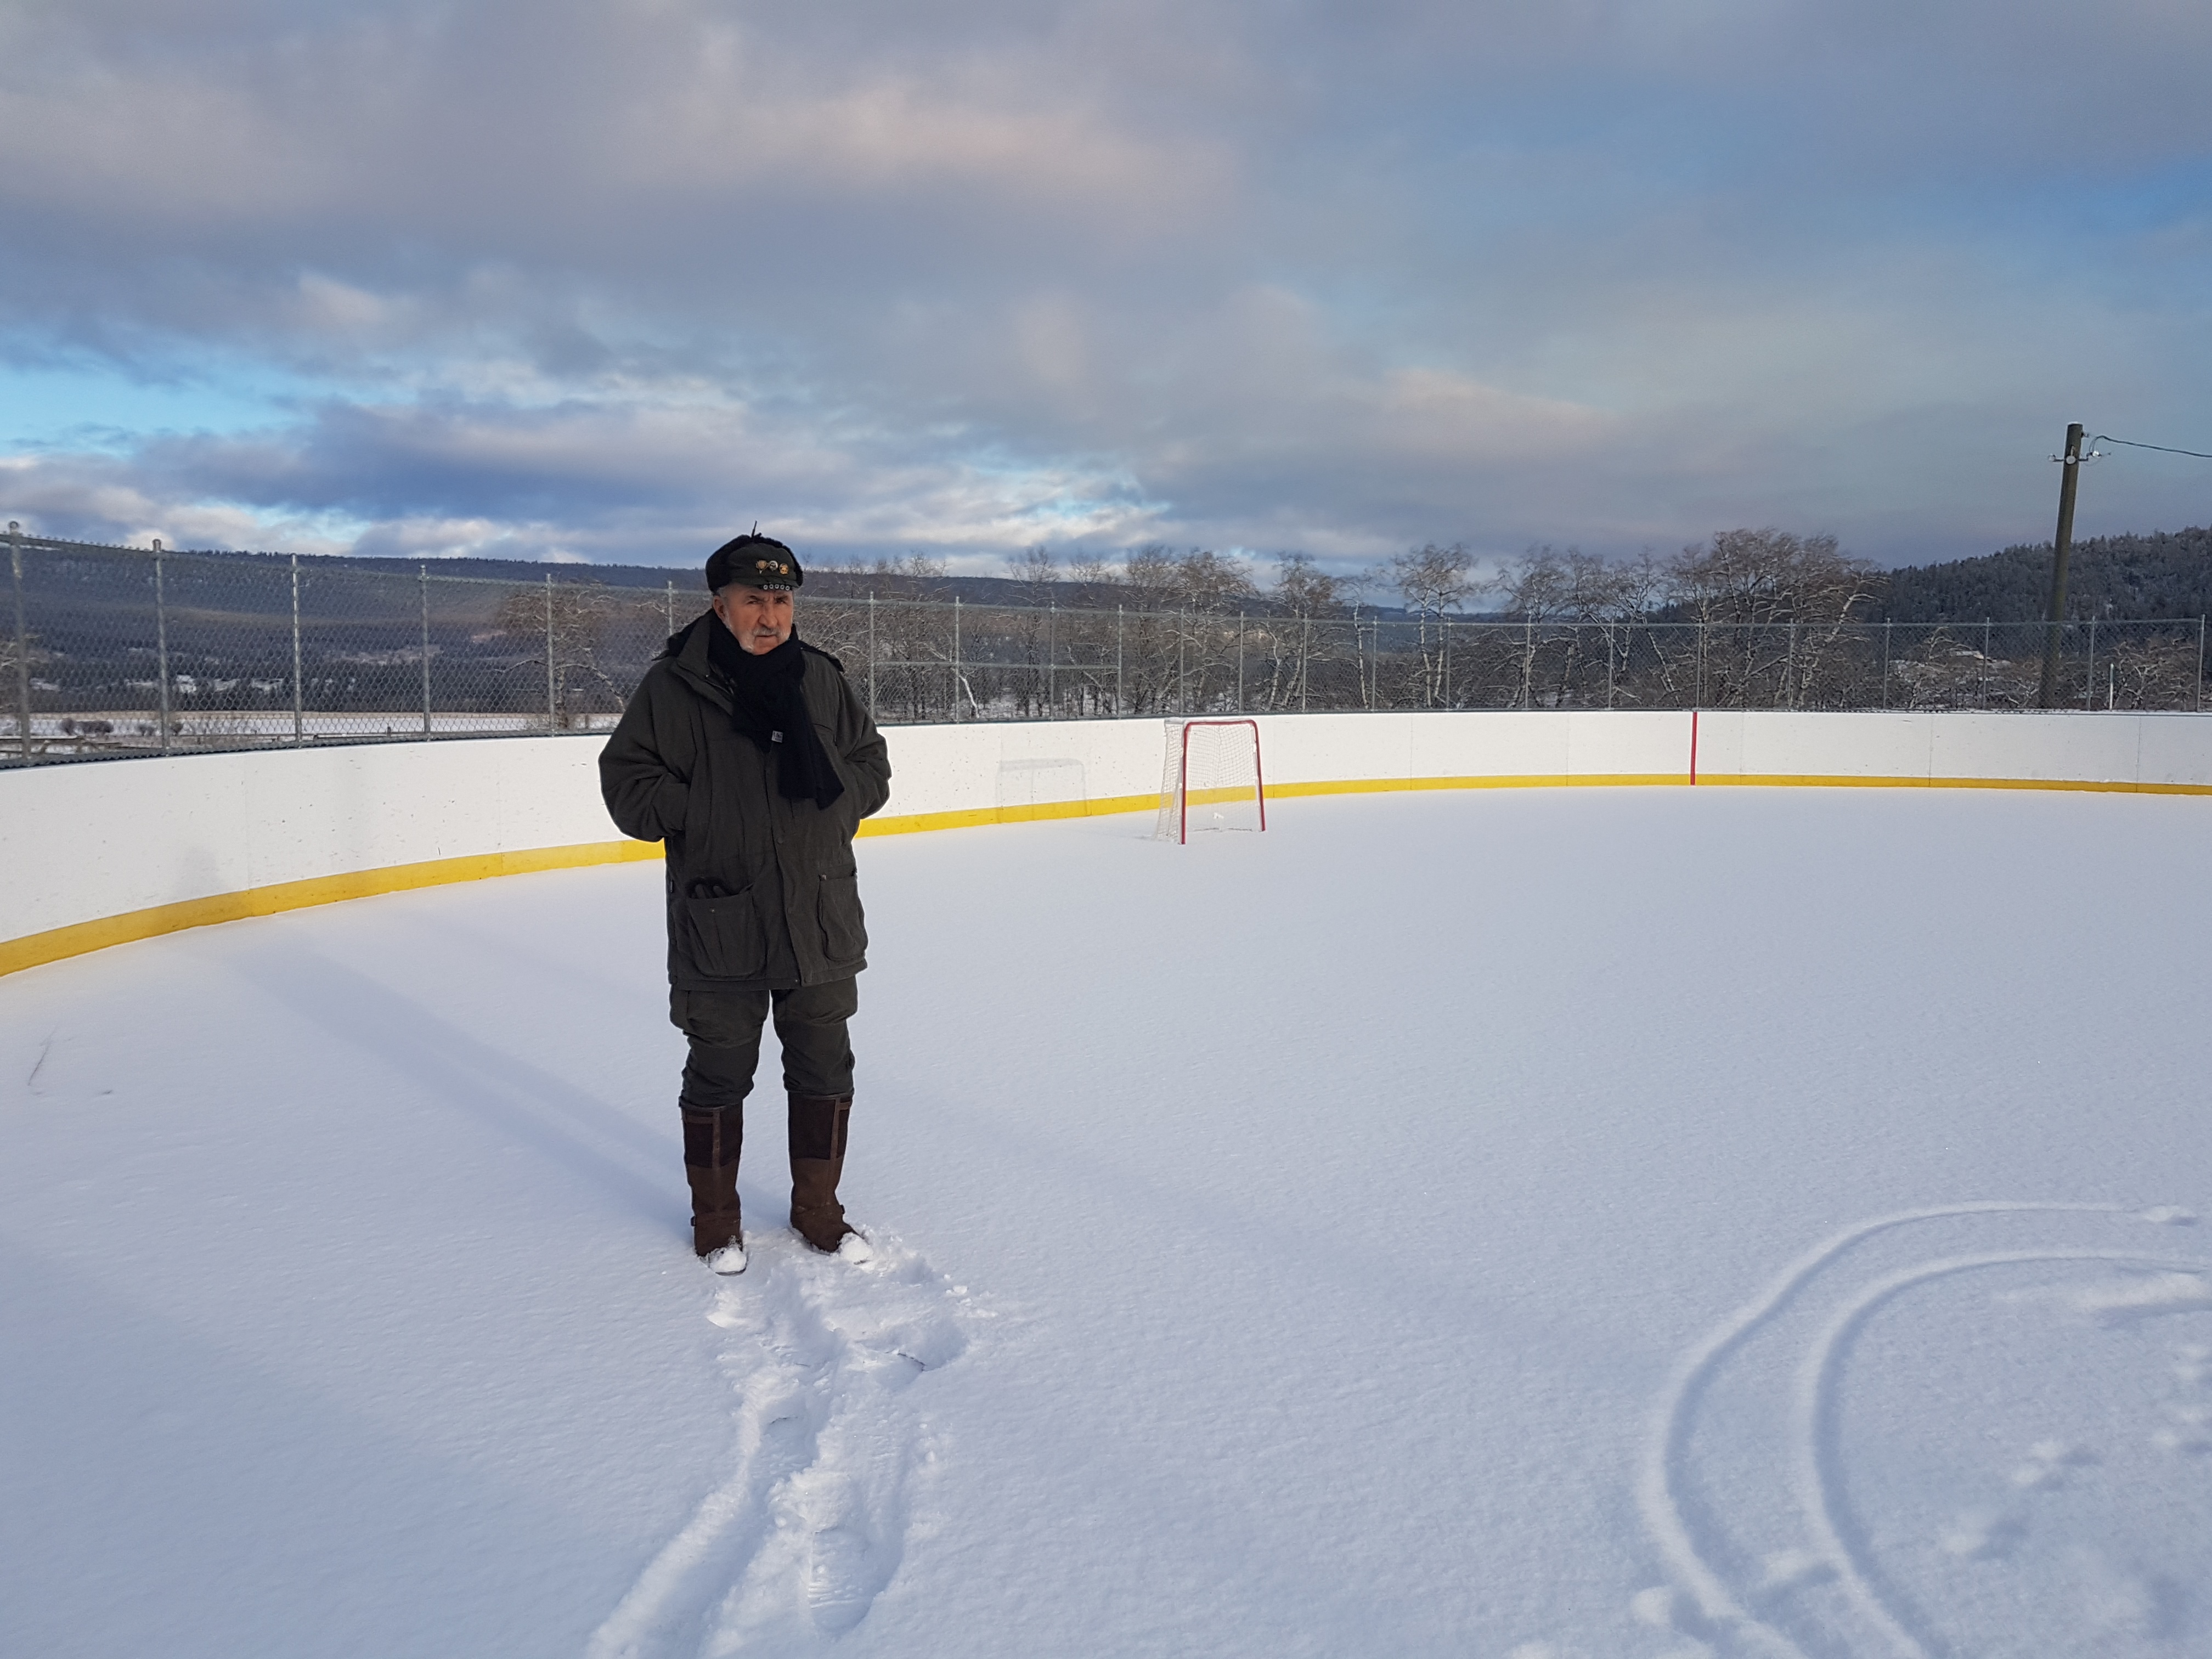 Ion Ţiriac a vizitat patinoarul micii comunităţi Yunesit'in din Canada înainte de inaugurarea patinoarului pe care l-a construit, Arena Telekom